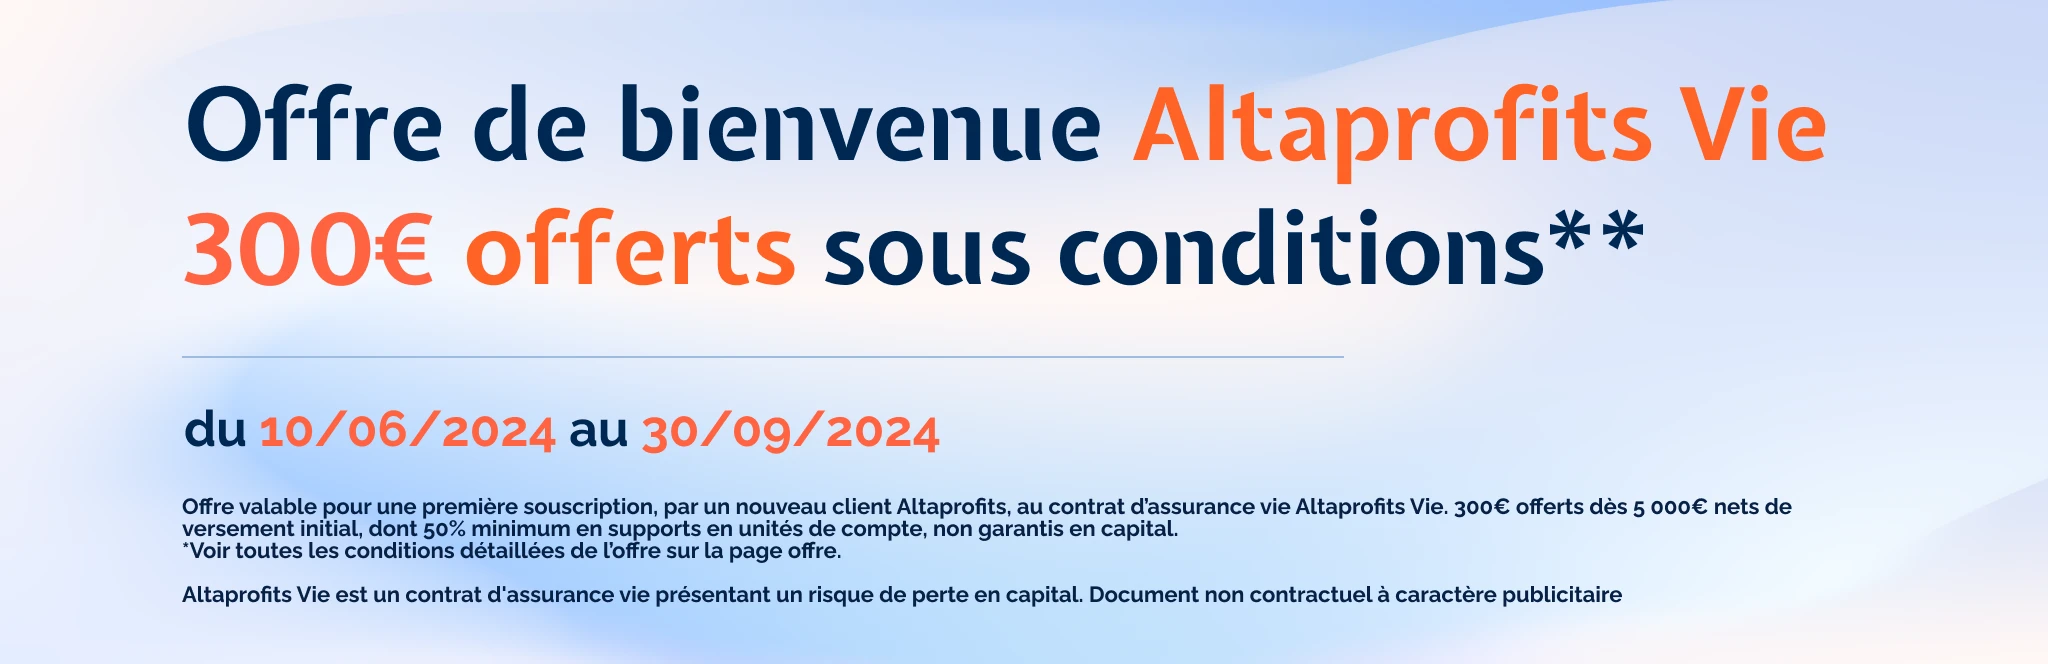 Offre de bienvenue Altaprofits Vie 300€ offerts sous conditions